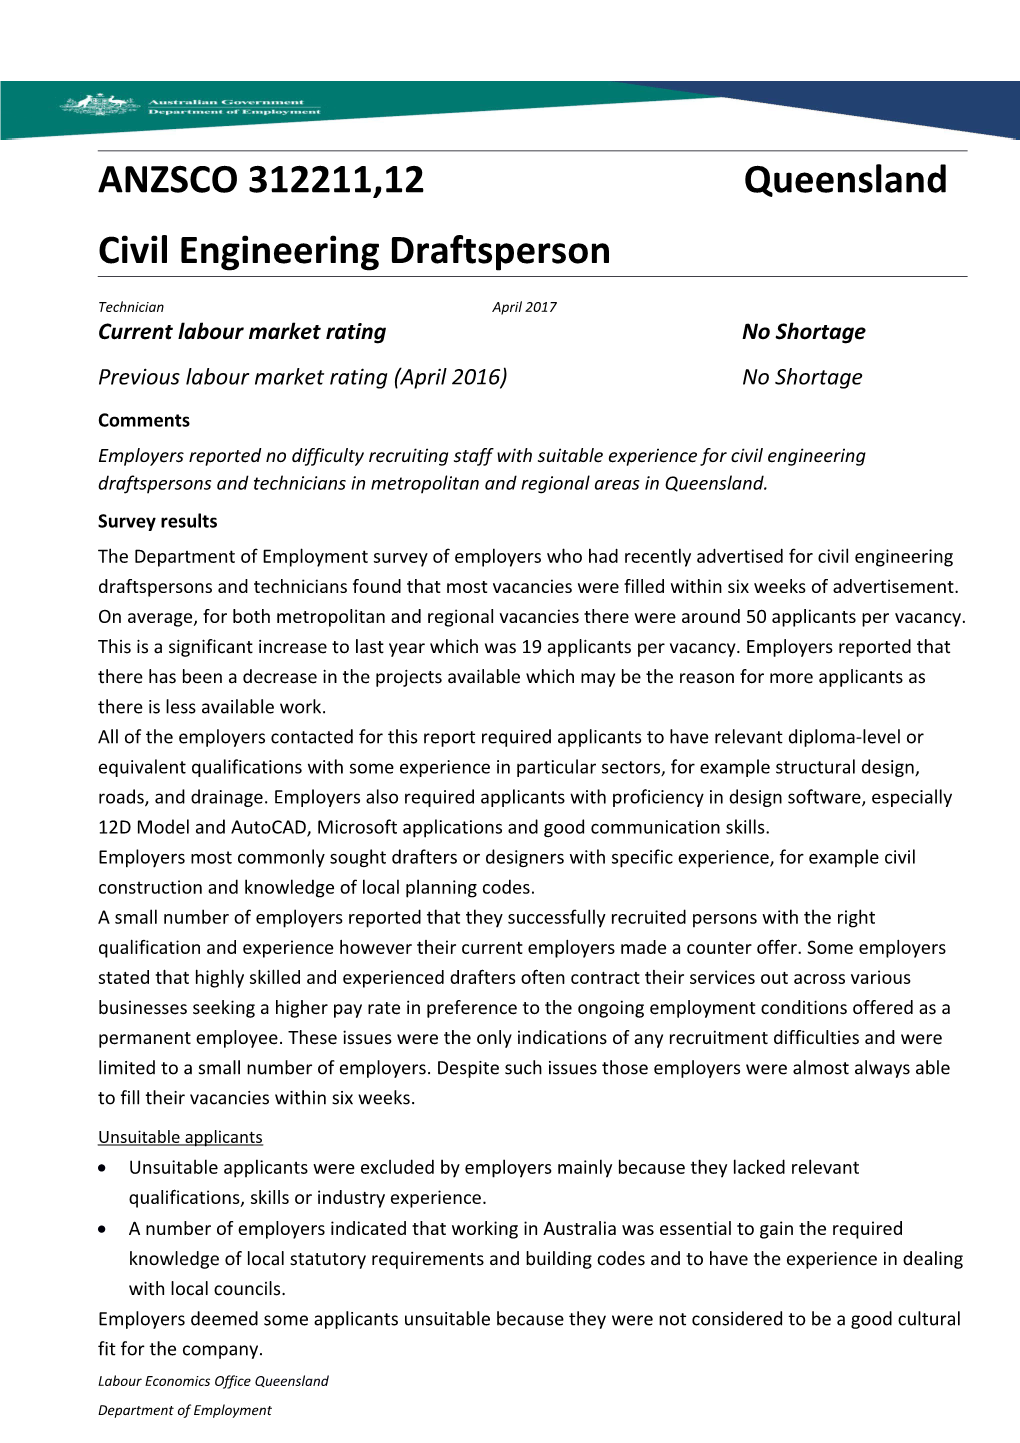 Civil Engineering Draftsperson Technician Queensland